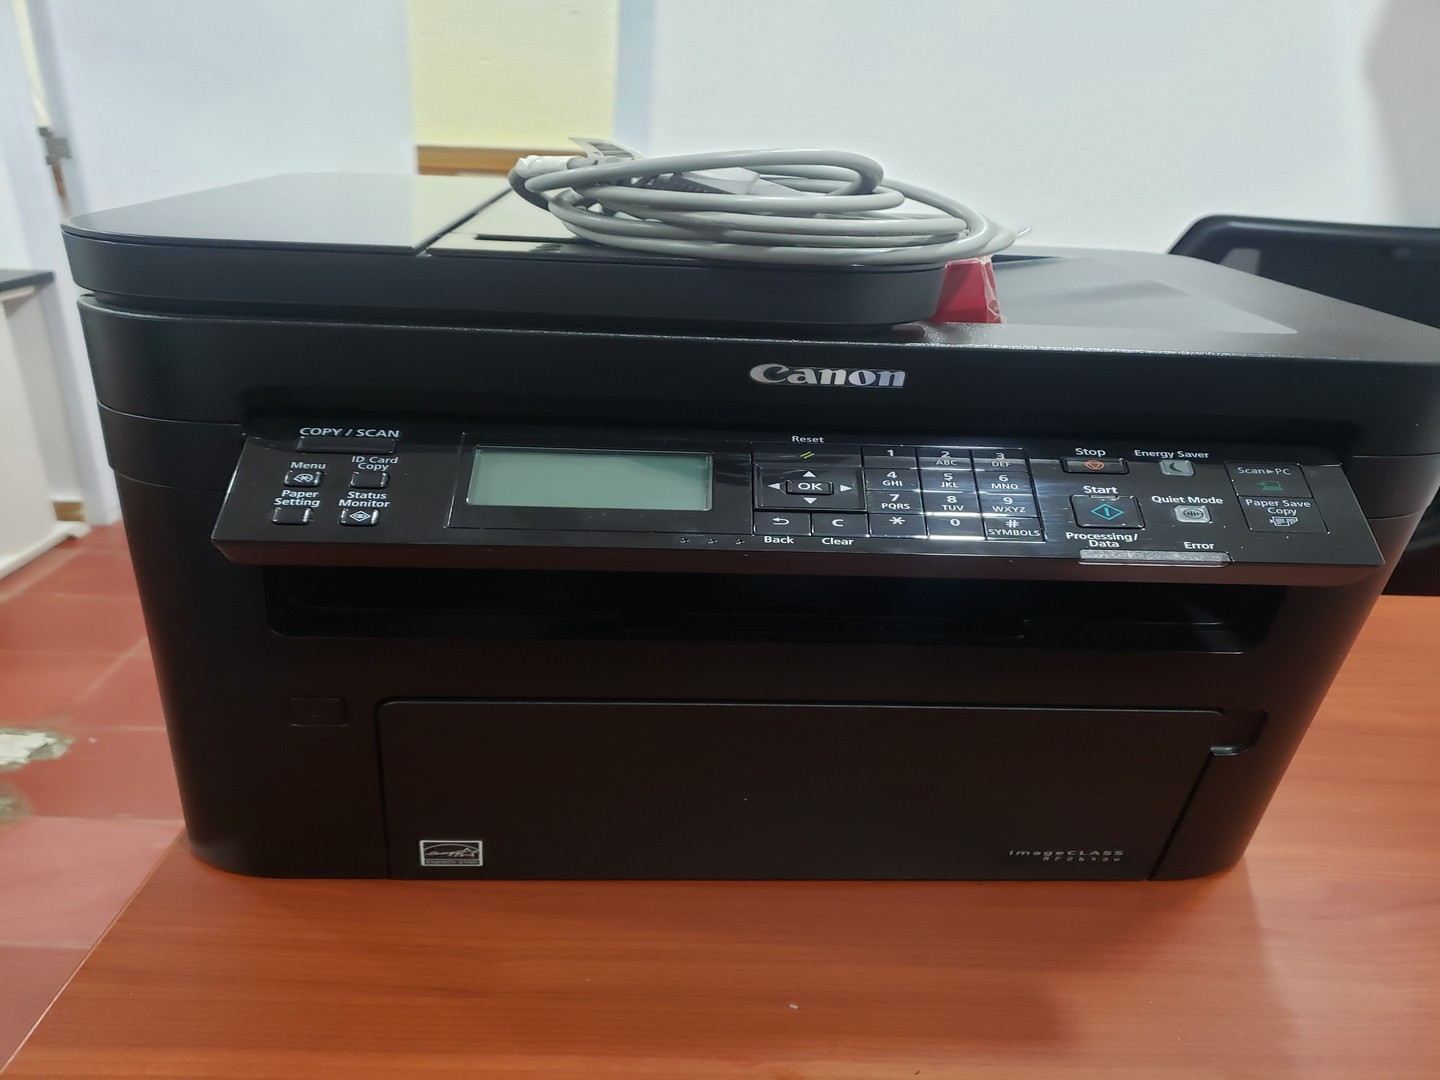 impresoras y scanners - Impresora Canon mff wd 264 multifuncional casi nueva con tonner nuevo incluido 2